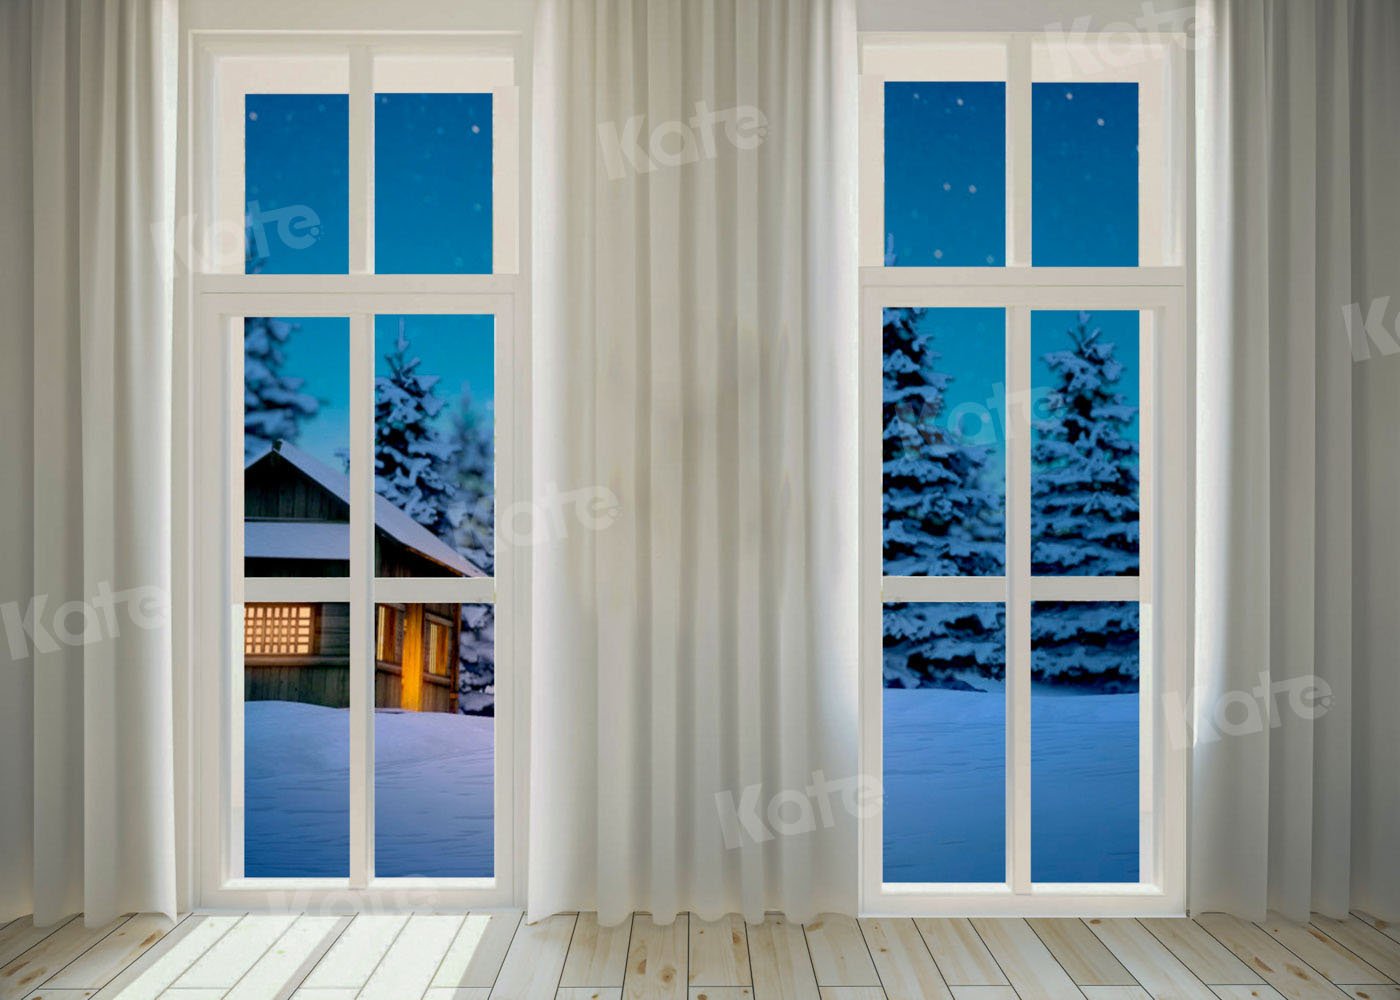 Kate Winter Nacht Schnee Hintergrund Fenster für Fotografie von Chain Photography